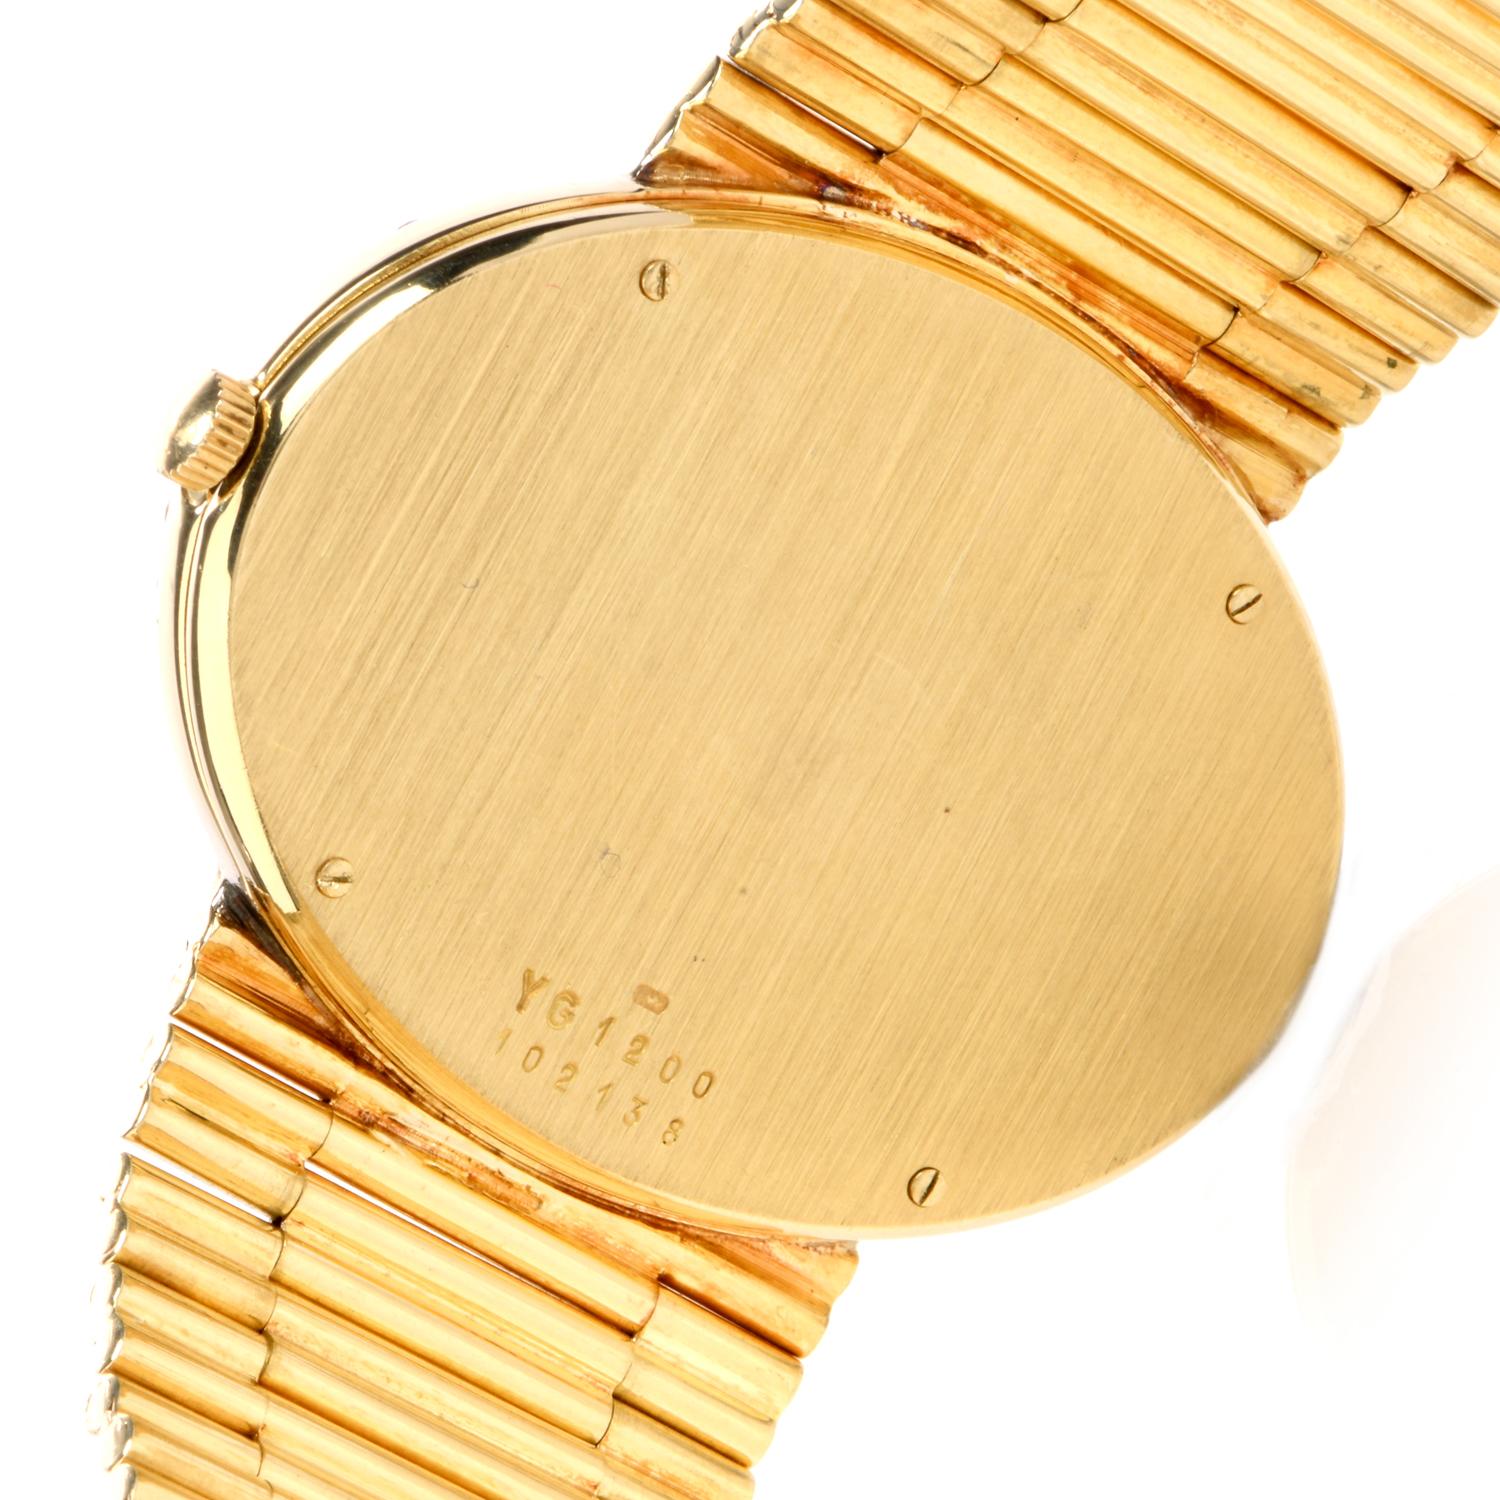 Modern 1970s Bueche Girod Diamond 18 Karat Gold Ref YG1200 Mechanical Watch